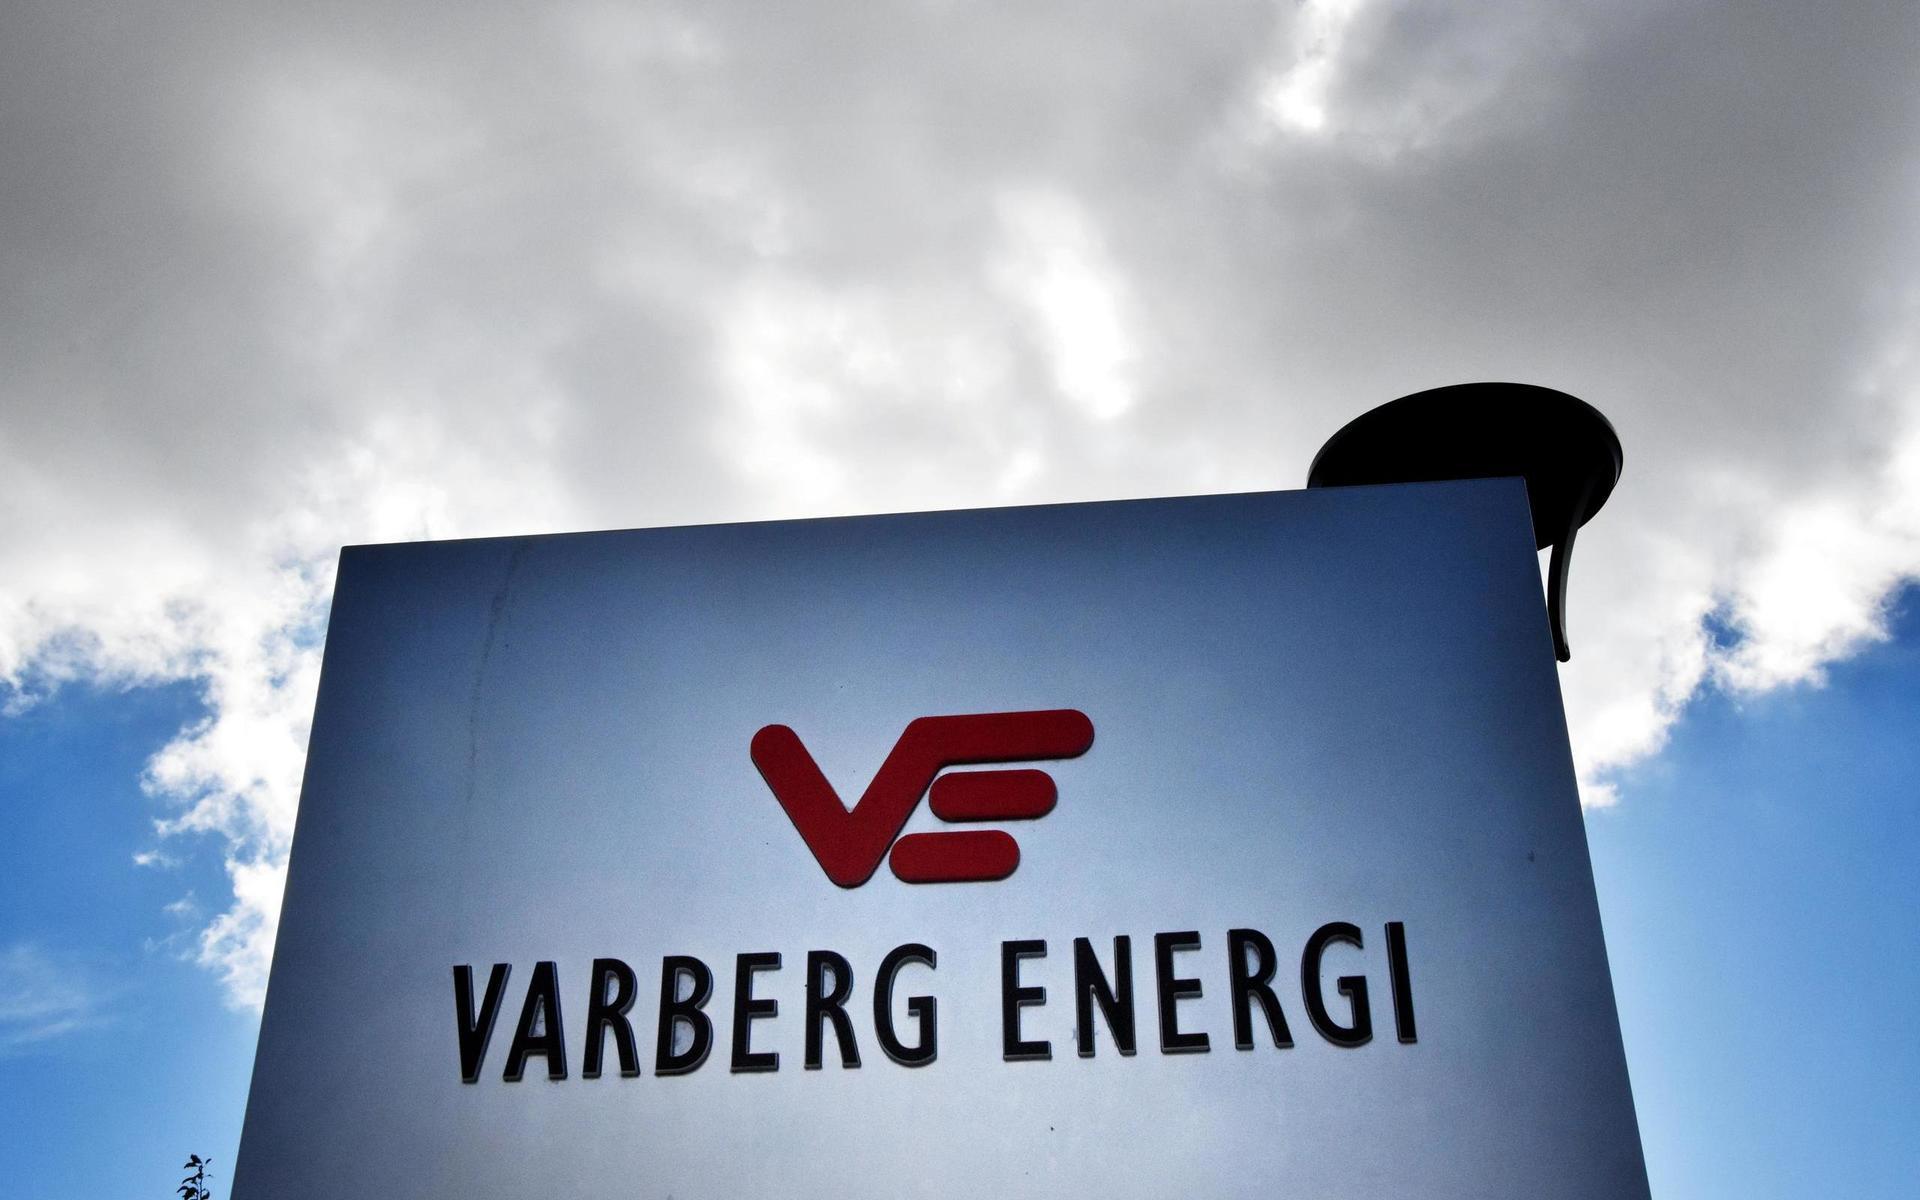 Varberg Energi har anlitat KG Mekaniska AB sedan 2012. I oktober förra året blev företagets vd invald i styrelsen. 